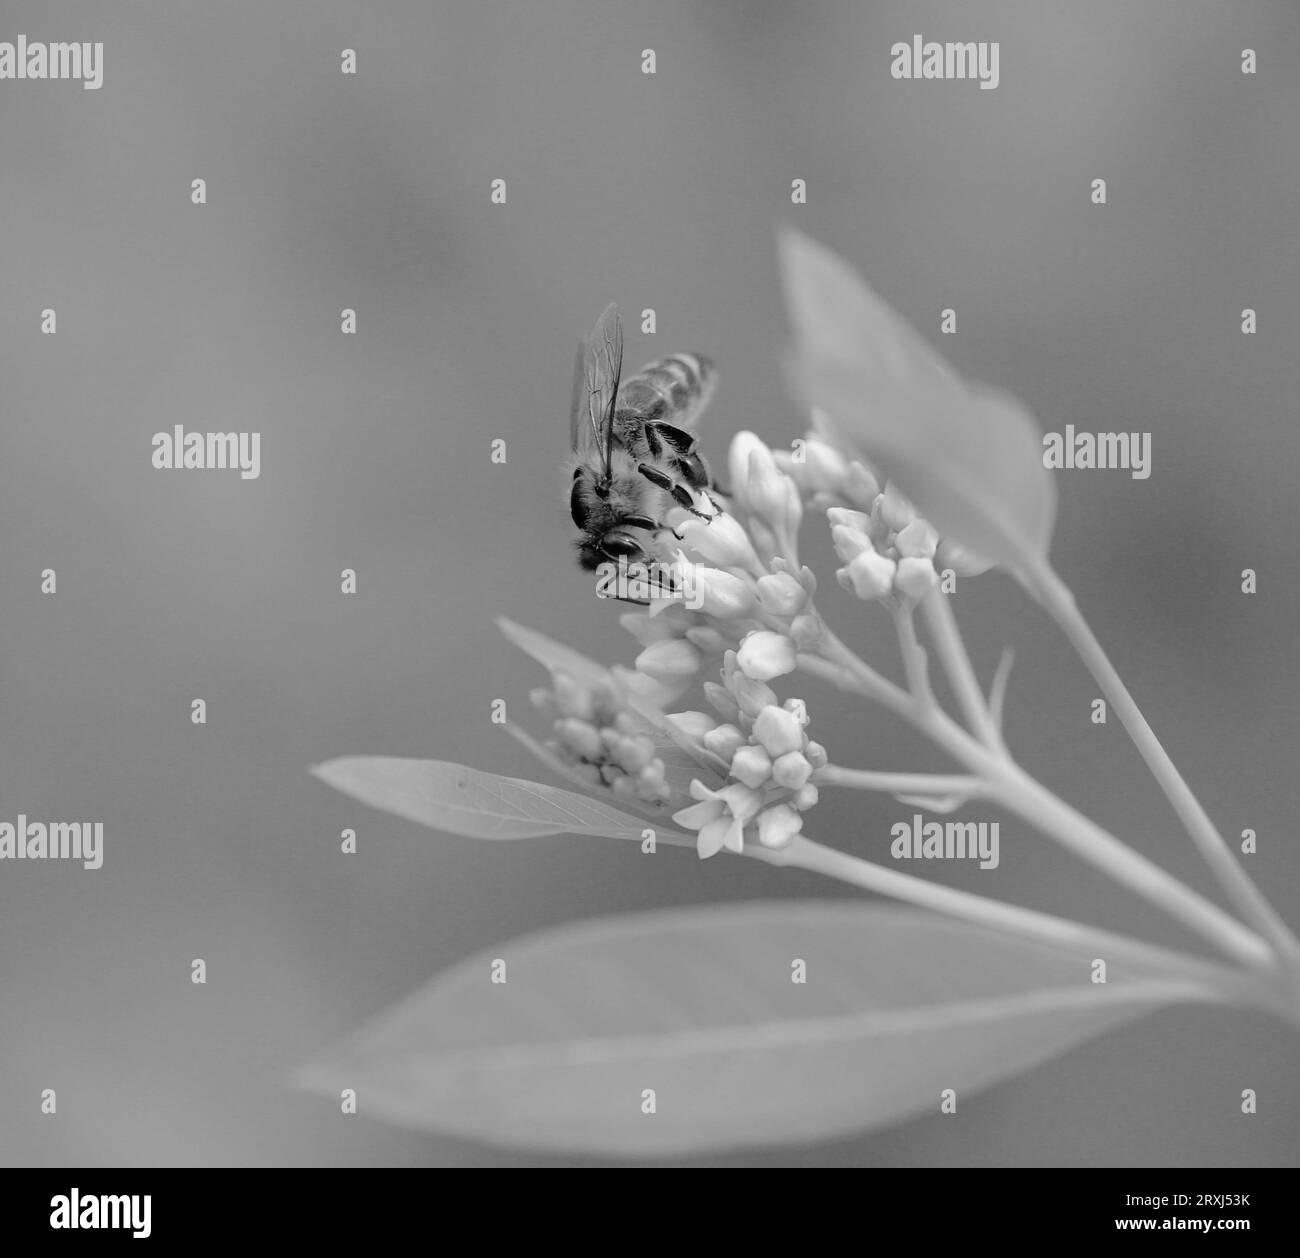 Photo en noir et blanc d'une abeille buvant d'une fleur blanche. Banque D'Images